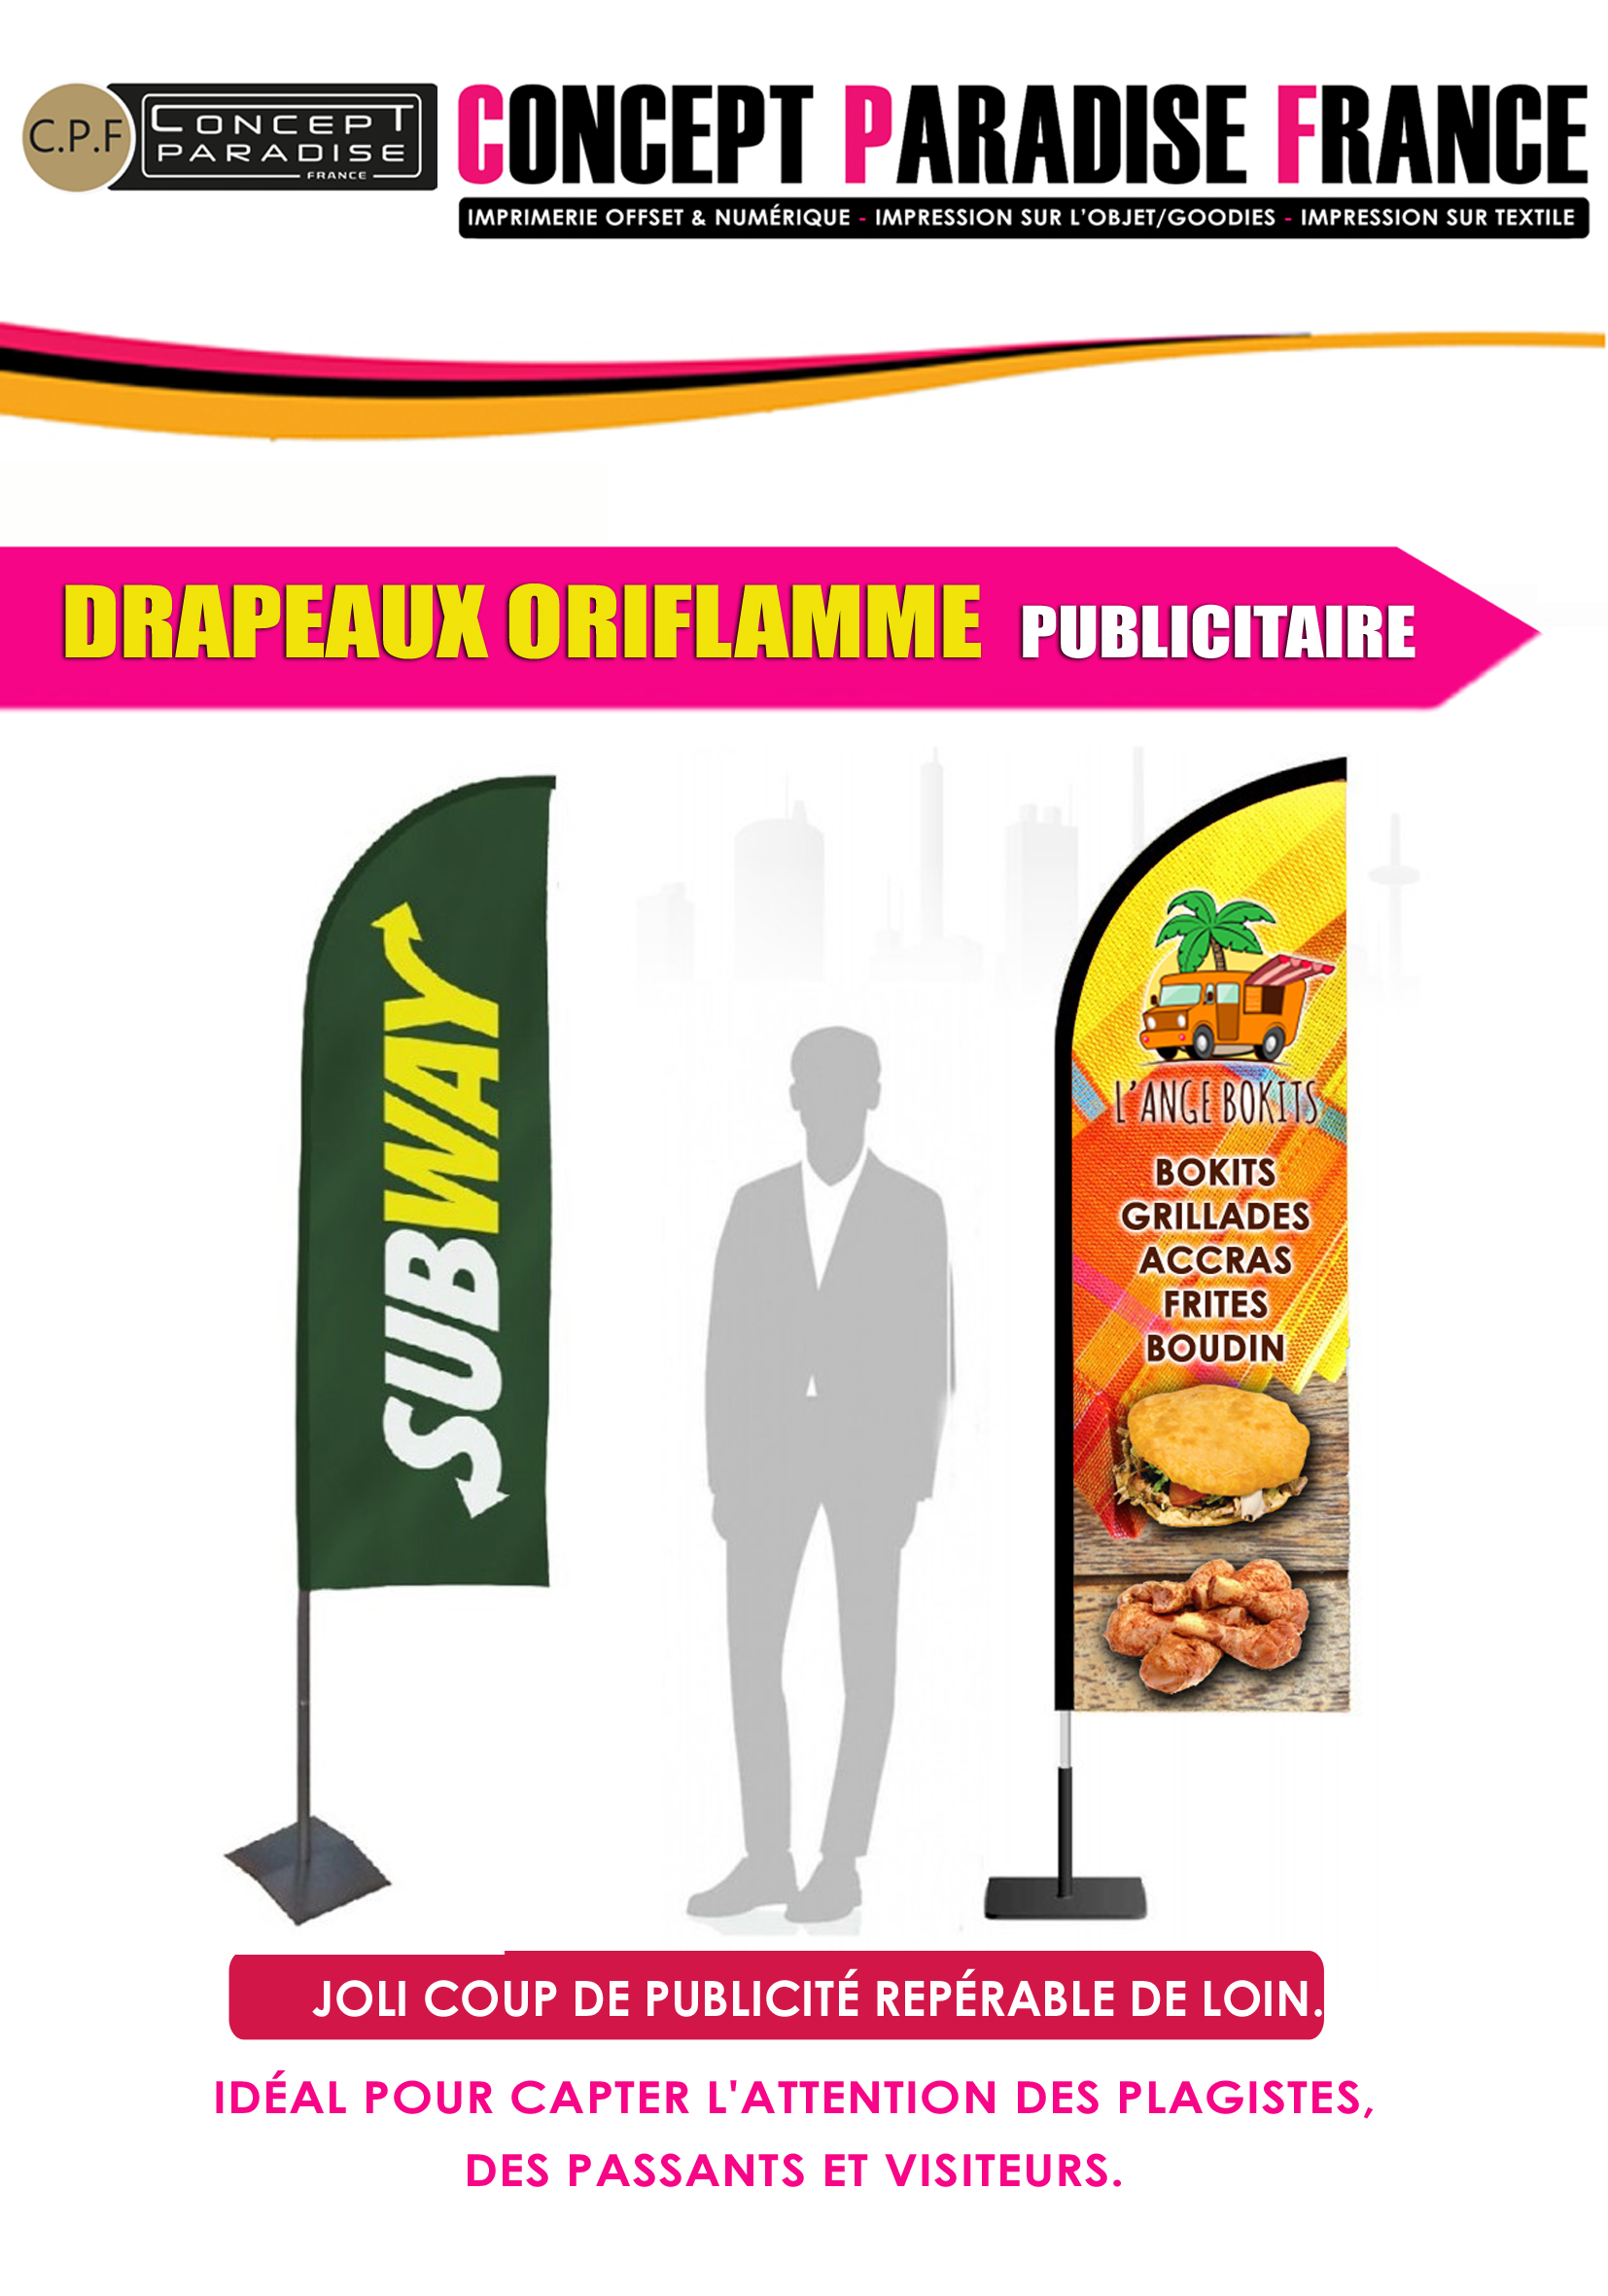 Drapeaux oriflamme publicitaire – Concept Paradise France